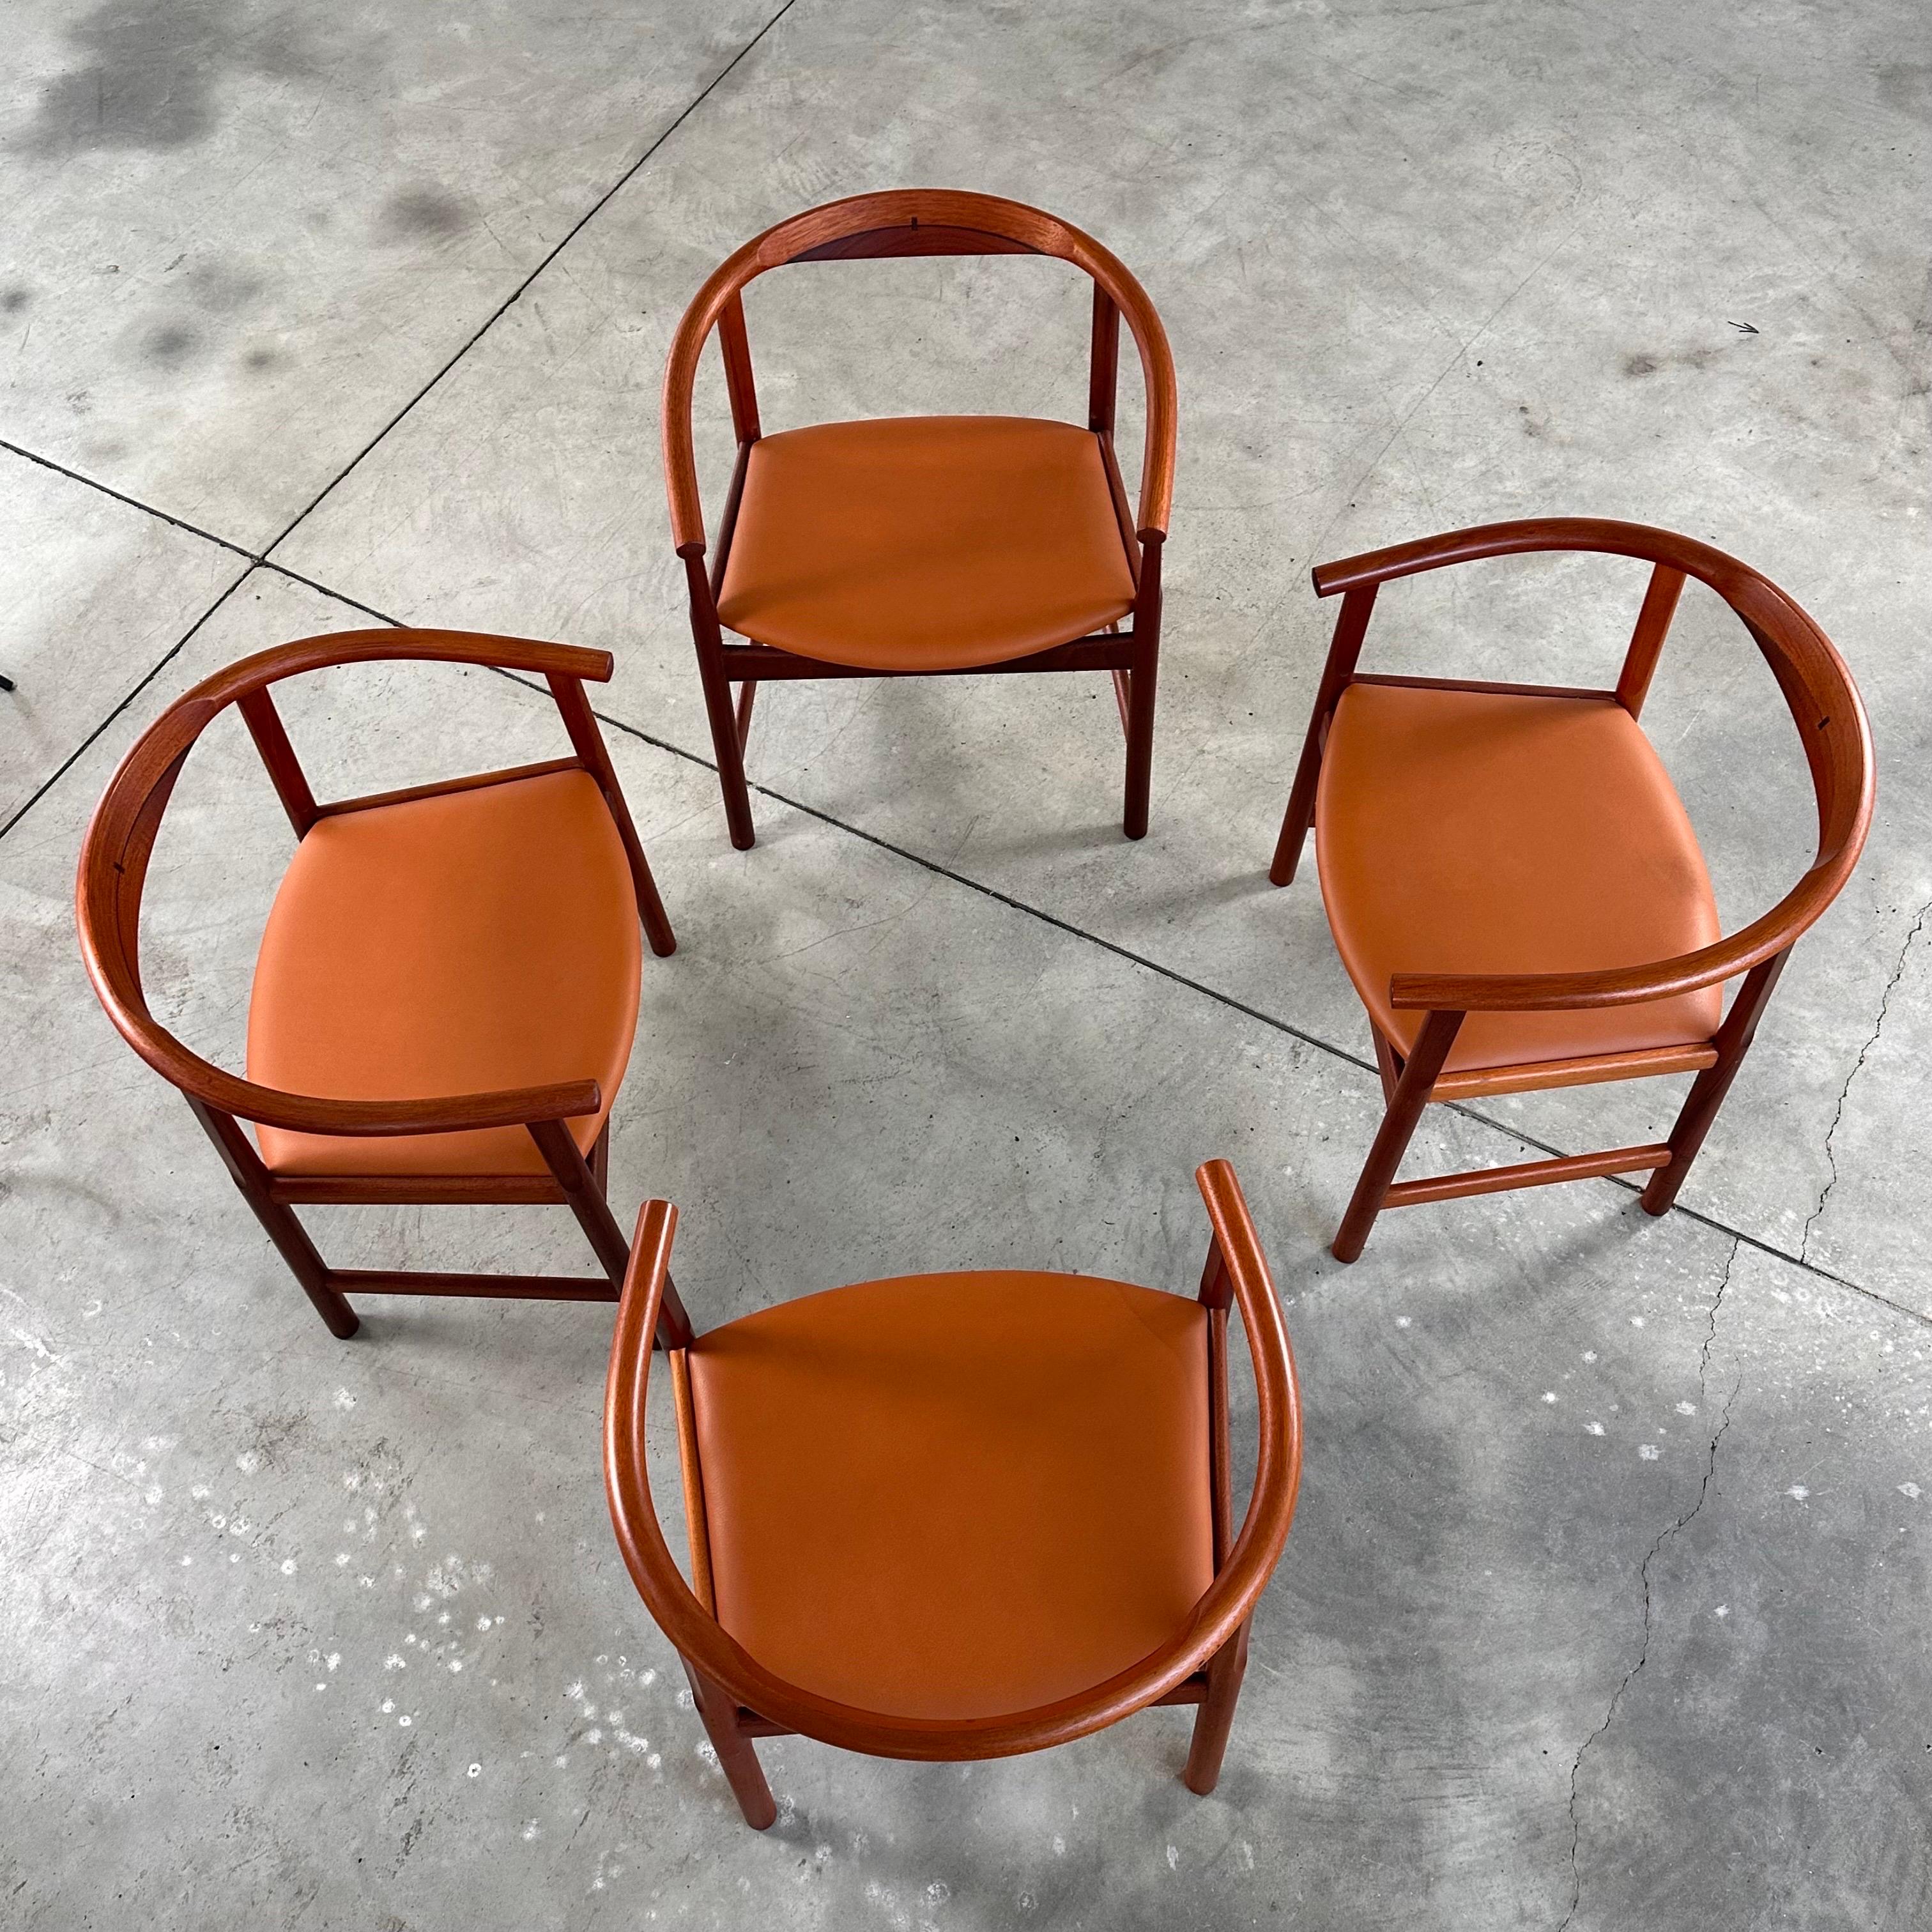 
Élevez votre salle à manger avec cet ensemble exceptionnel de chaises de salle à manger Hans J. Wegner PP2023, fabriquées par PP Mobler au Danemark en 1969. Réputées pour leur design emblématique et leur fabrication impeccable, ces chaises